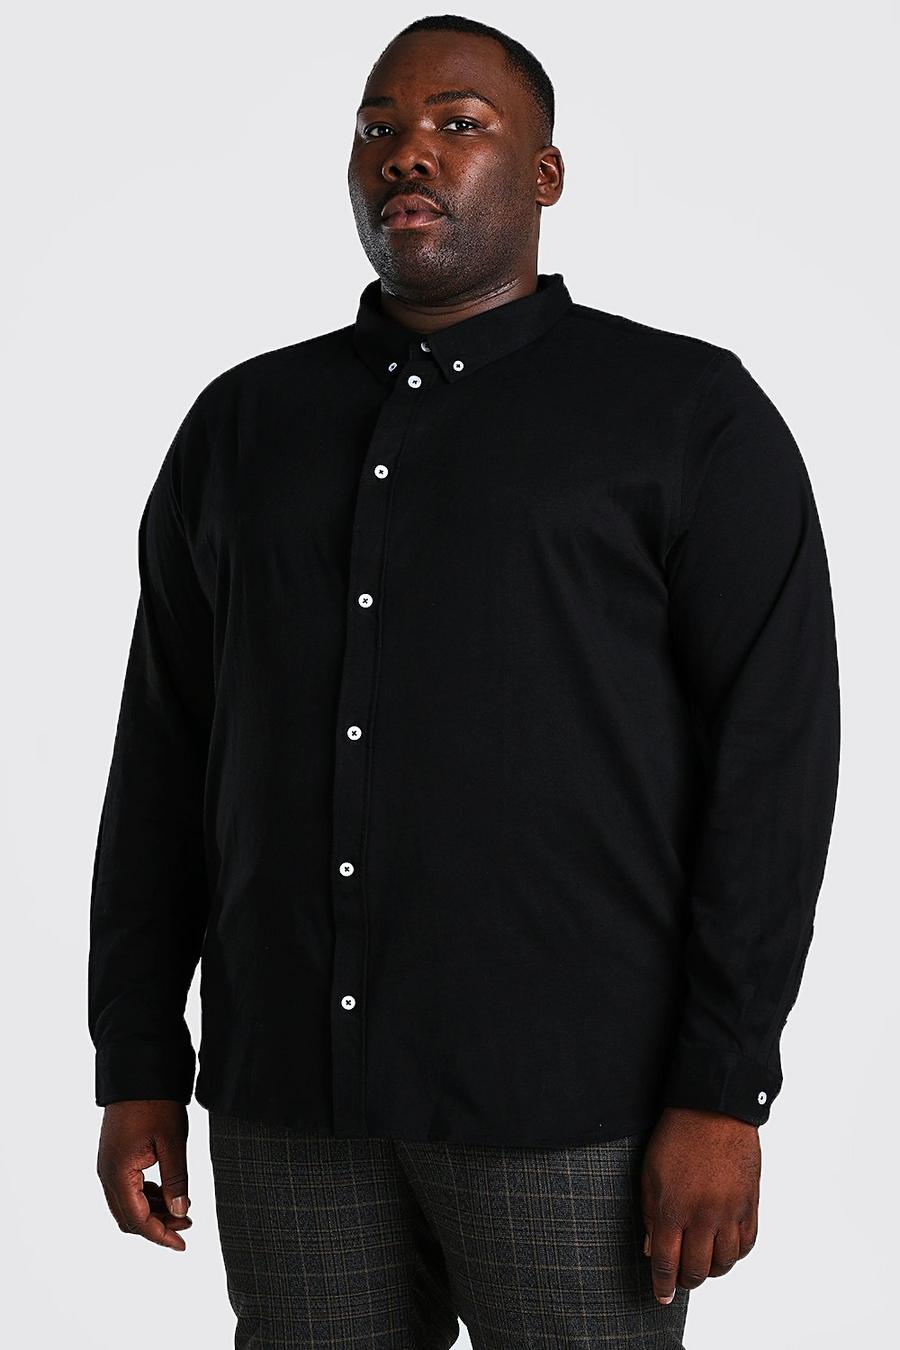 שחור black חולצה מבד ג'רסי עם שרוולים ארוכים למידות גדולות